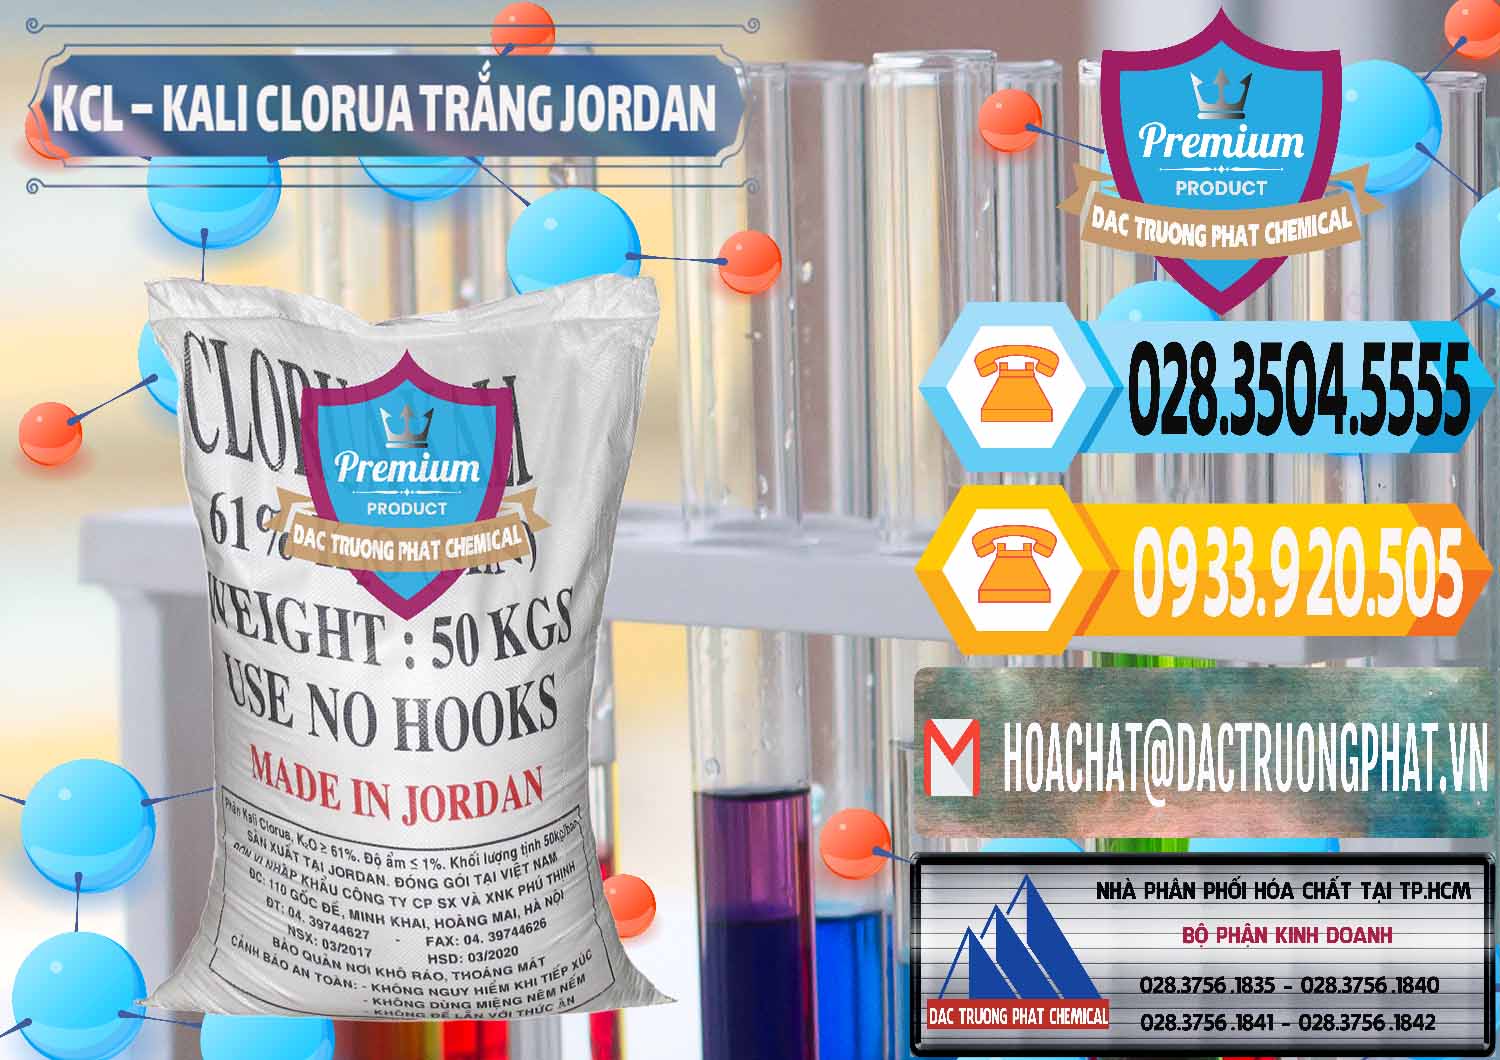 Công ty chuyên bán - cung ứng KCL – Kali Clorua Trắng Jordan - 0088 - Đơn vị chuyên cung cấp ( nhập khẩu ) hóa chất tại TP.HCM - hoachattayrua.net